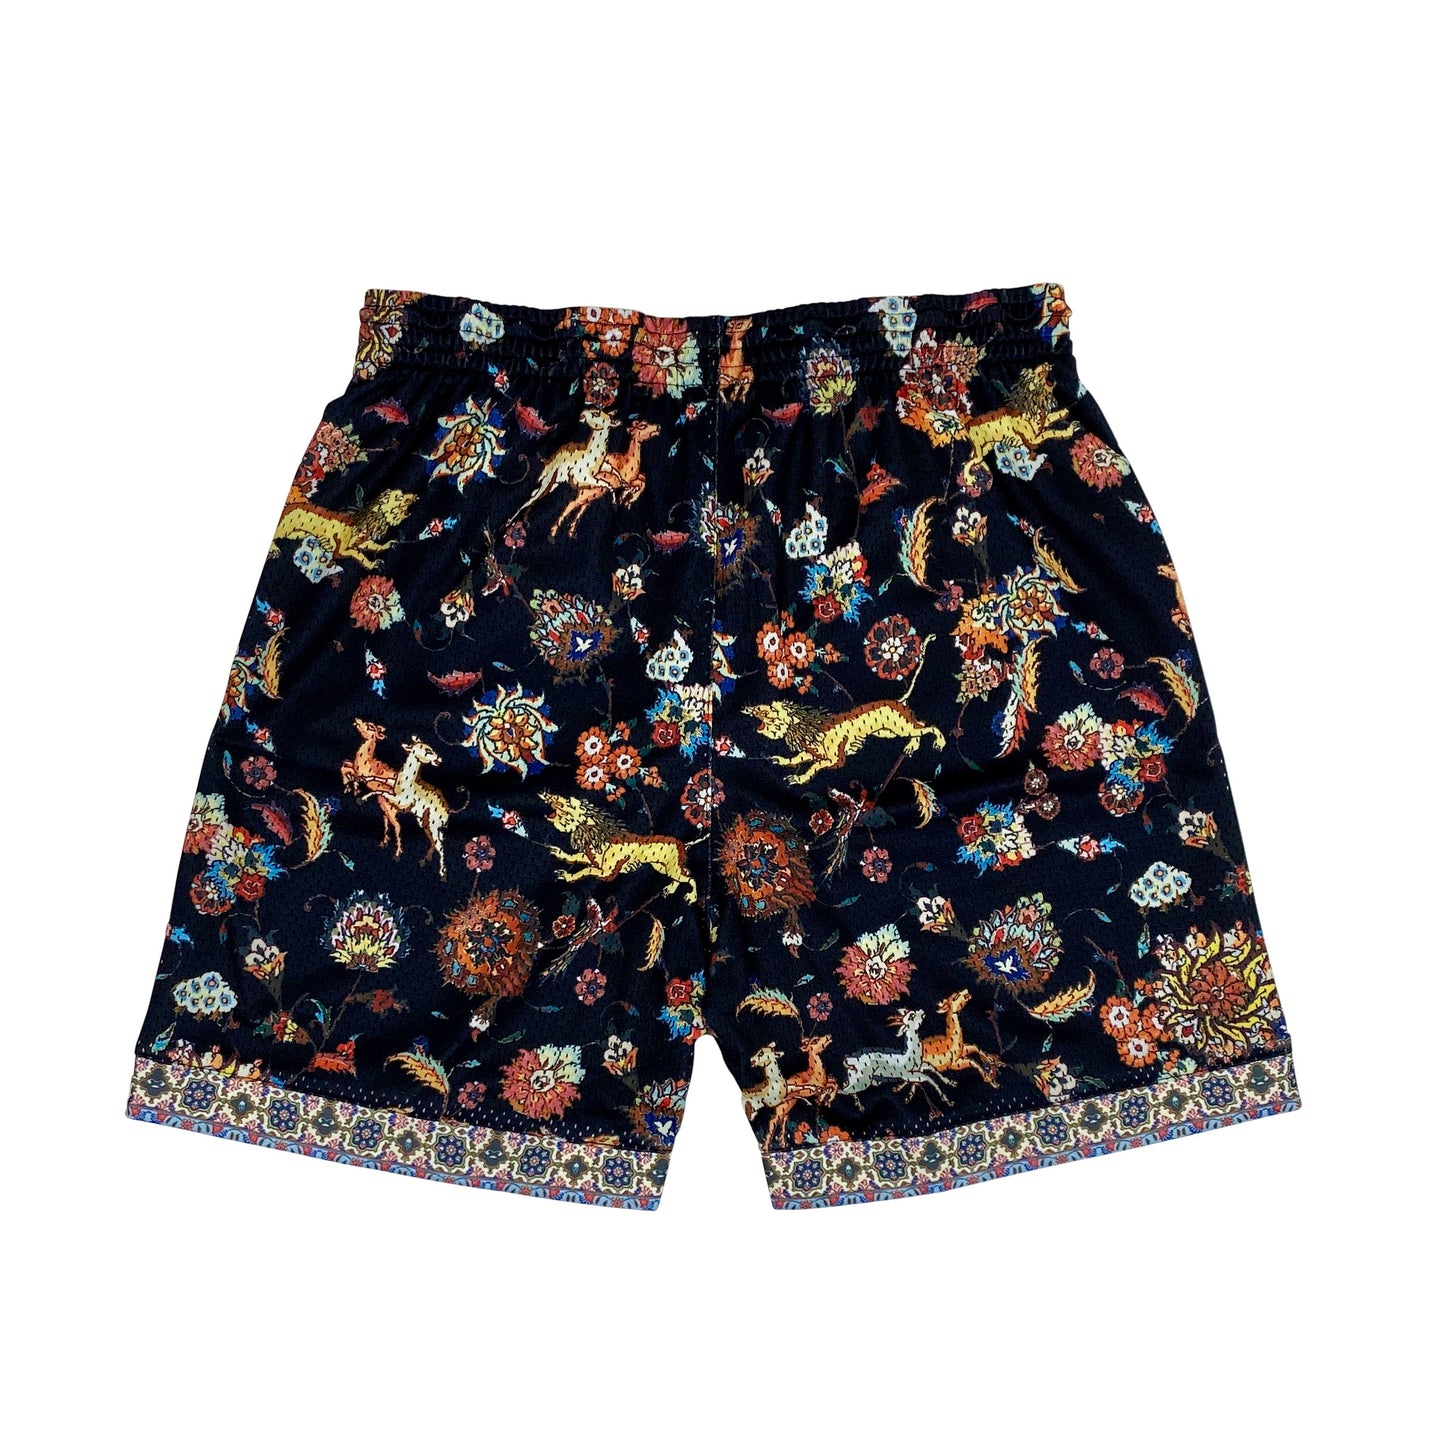 Bled-Bled Los Angeles-Mesh Shorts-Persia Shorts-Iran Shorts-Shiraz Shorts-Iran Clothing-Persian Clothing